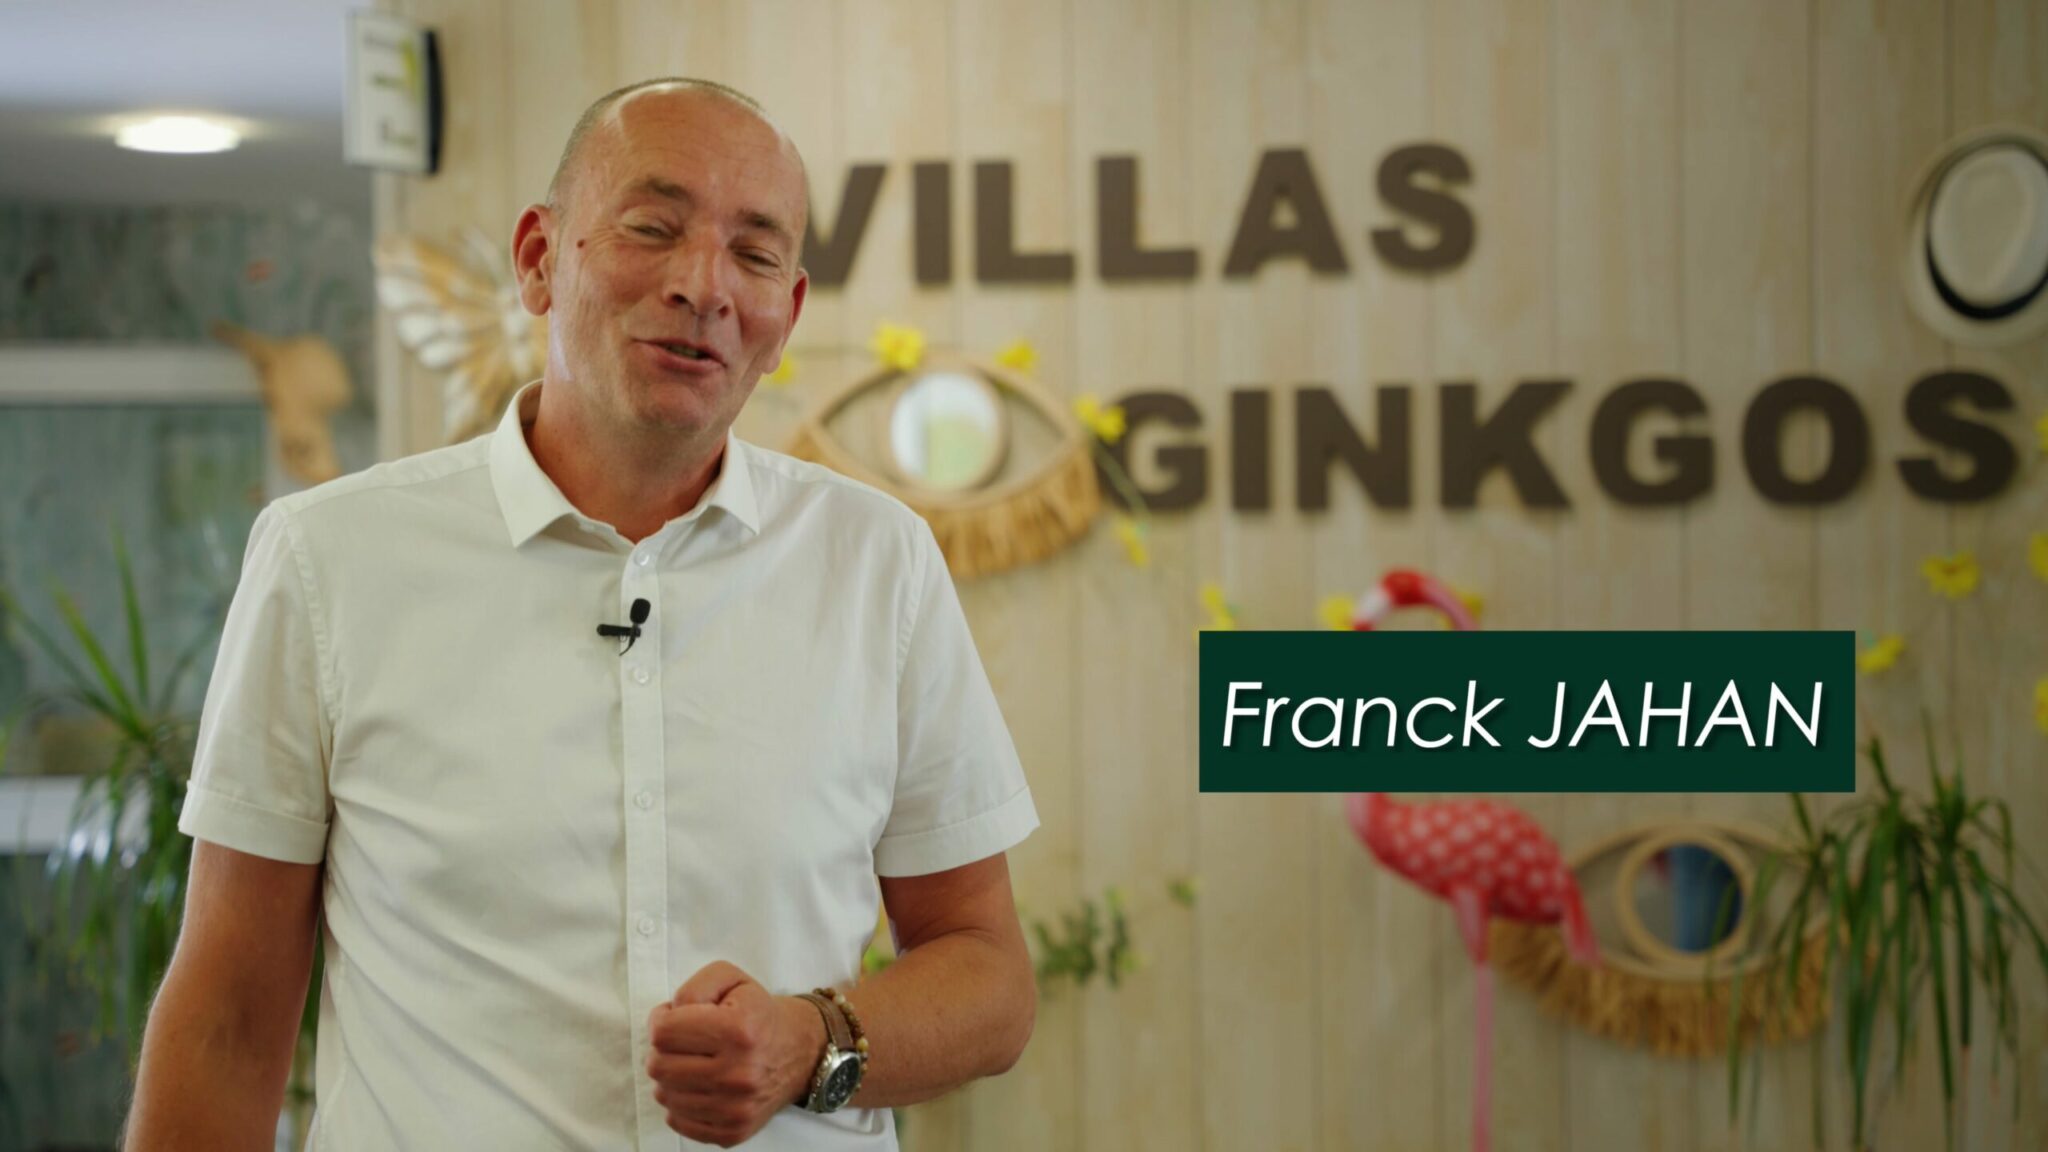 Témoignage de Franck JAHAN, Directeur général des Villas Ginkgos Villas Ginkgos Résidences Seniors